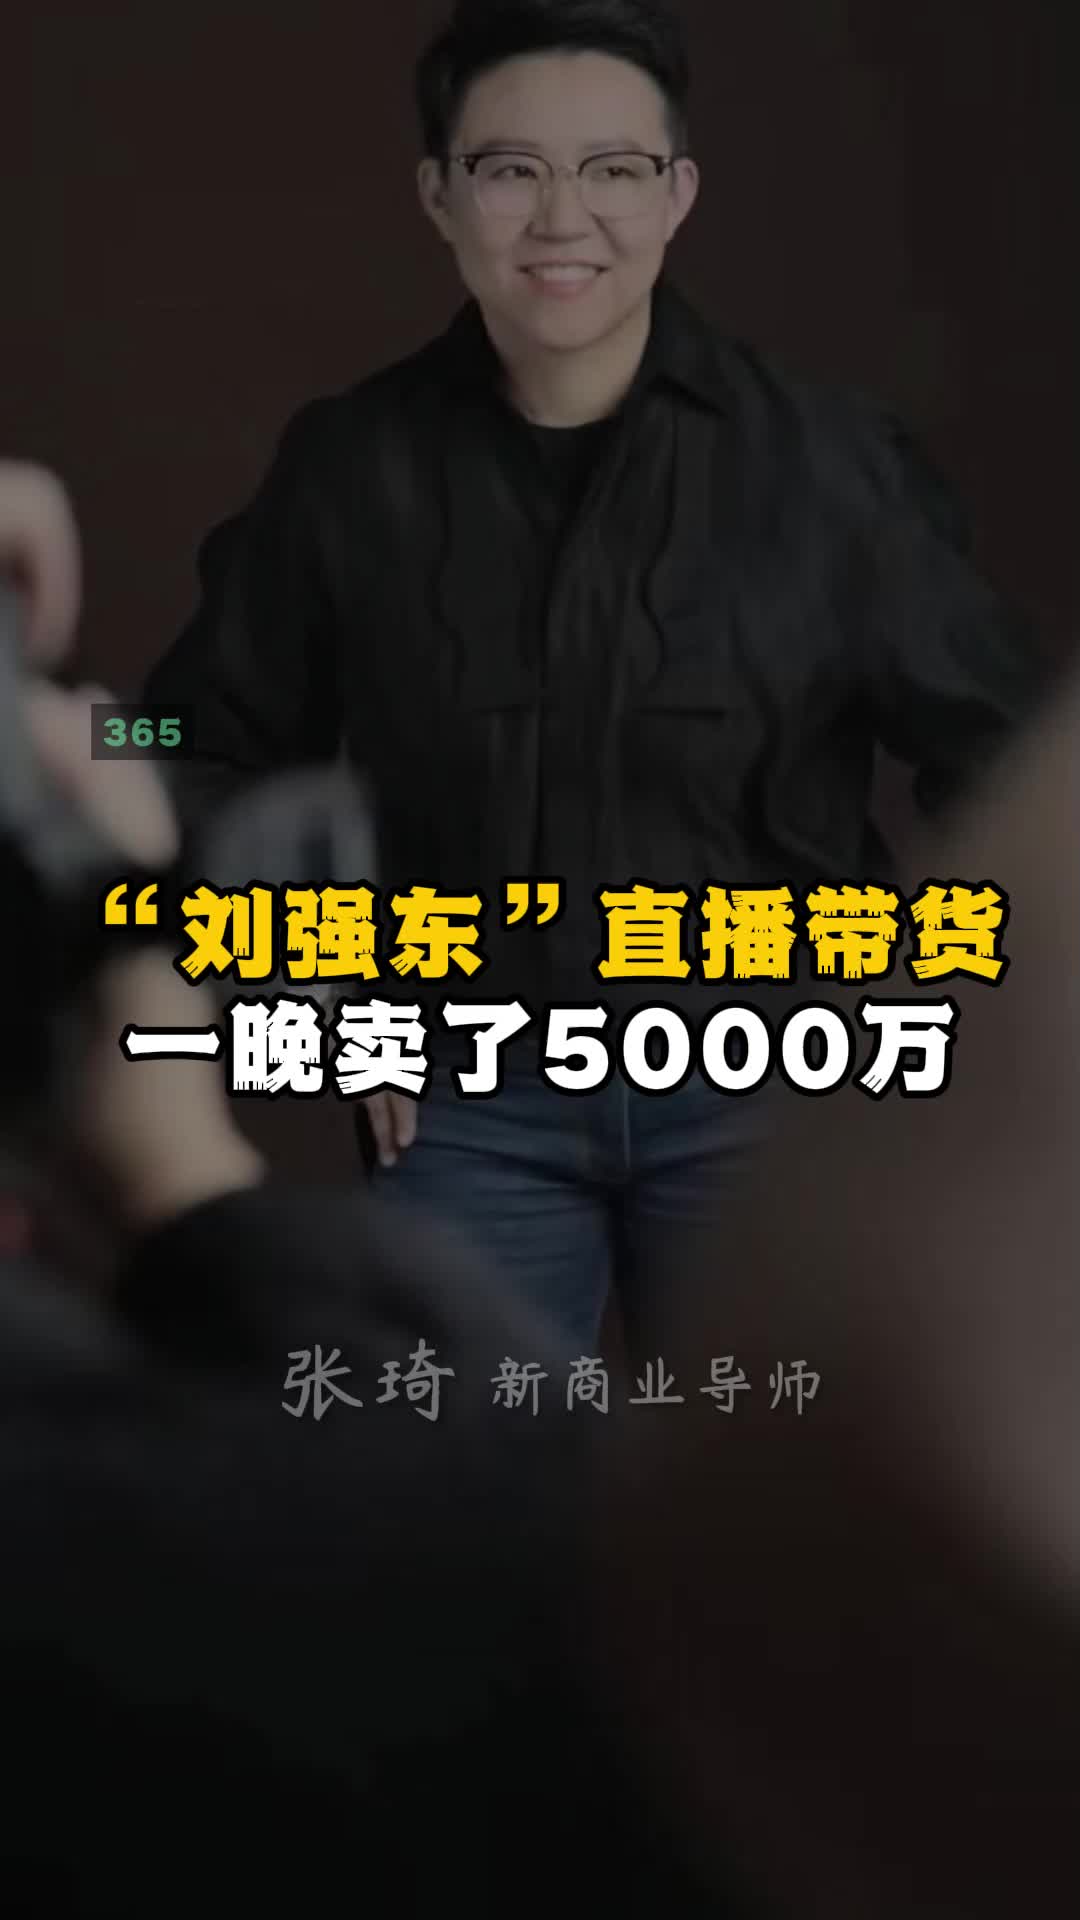 “刘强东”直播带货 一晚卖了5000万